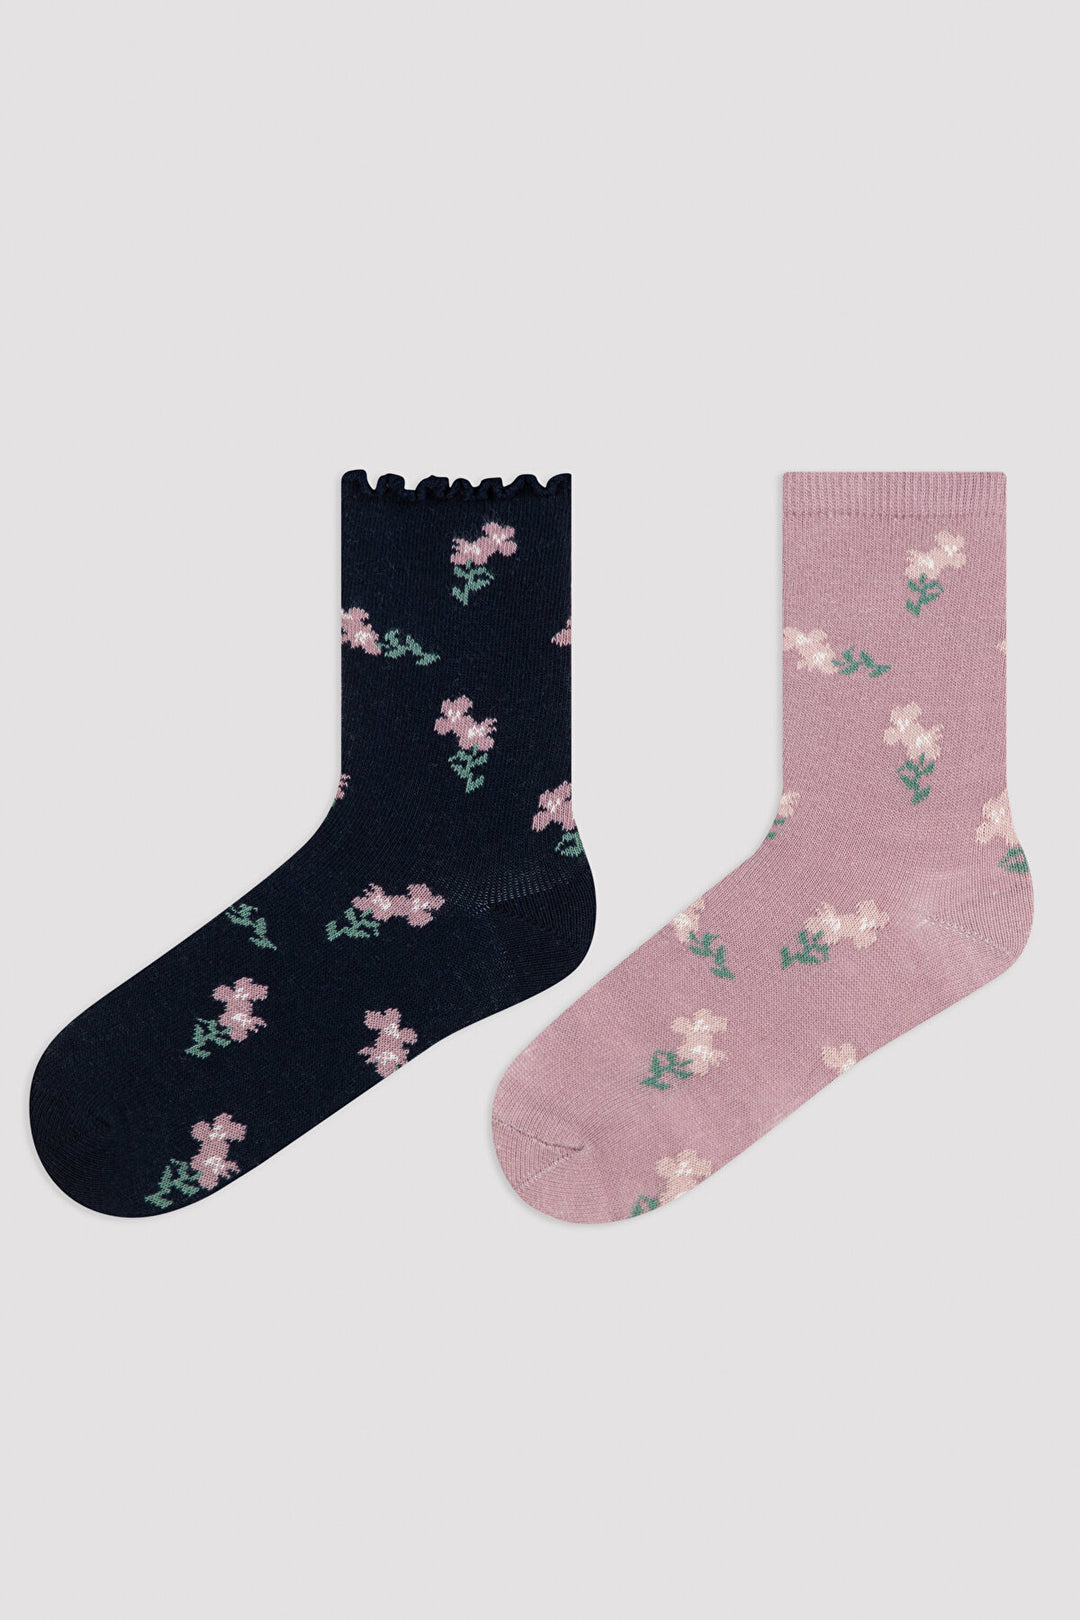 Multi Colour Girls Dark Floral 2In1 Socket Socks